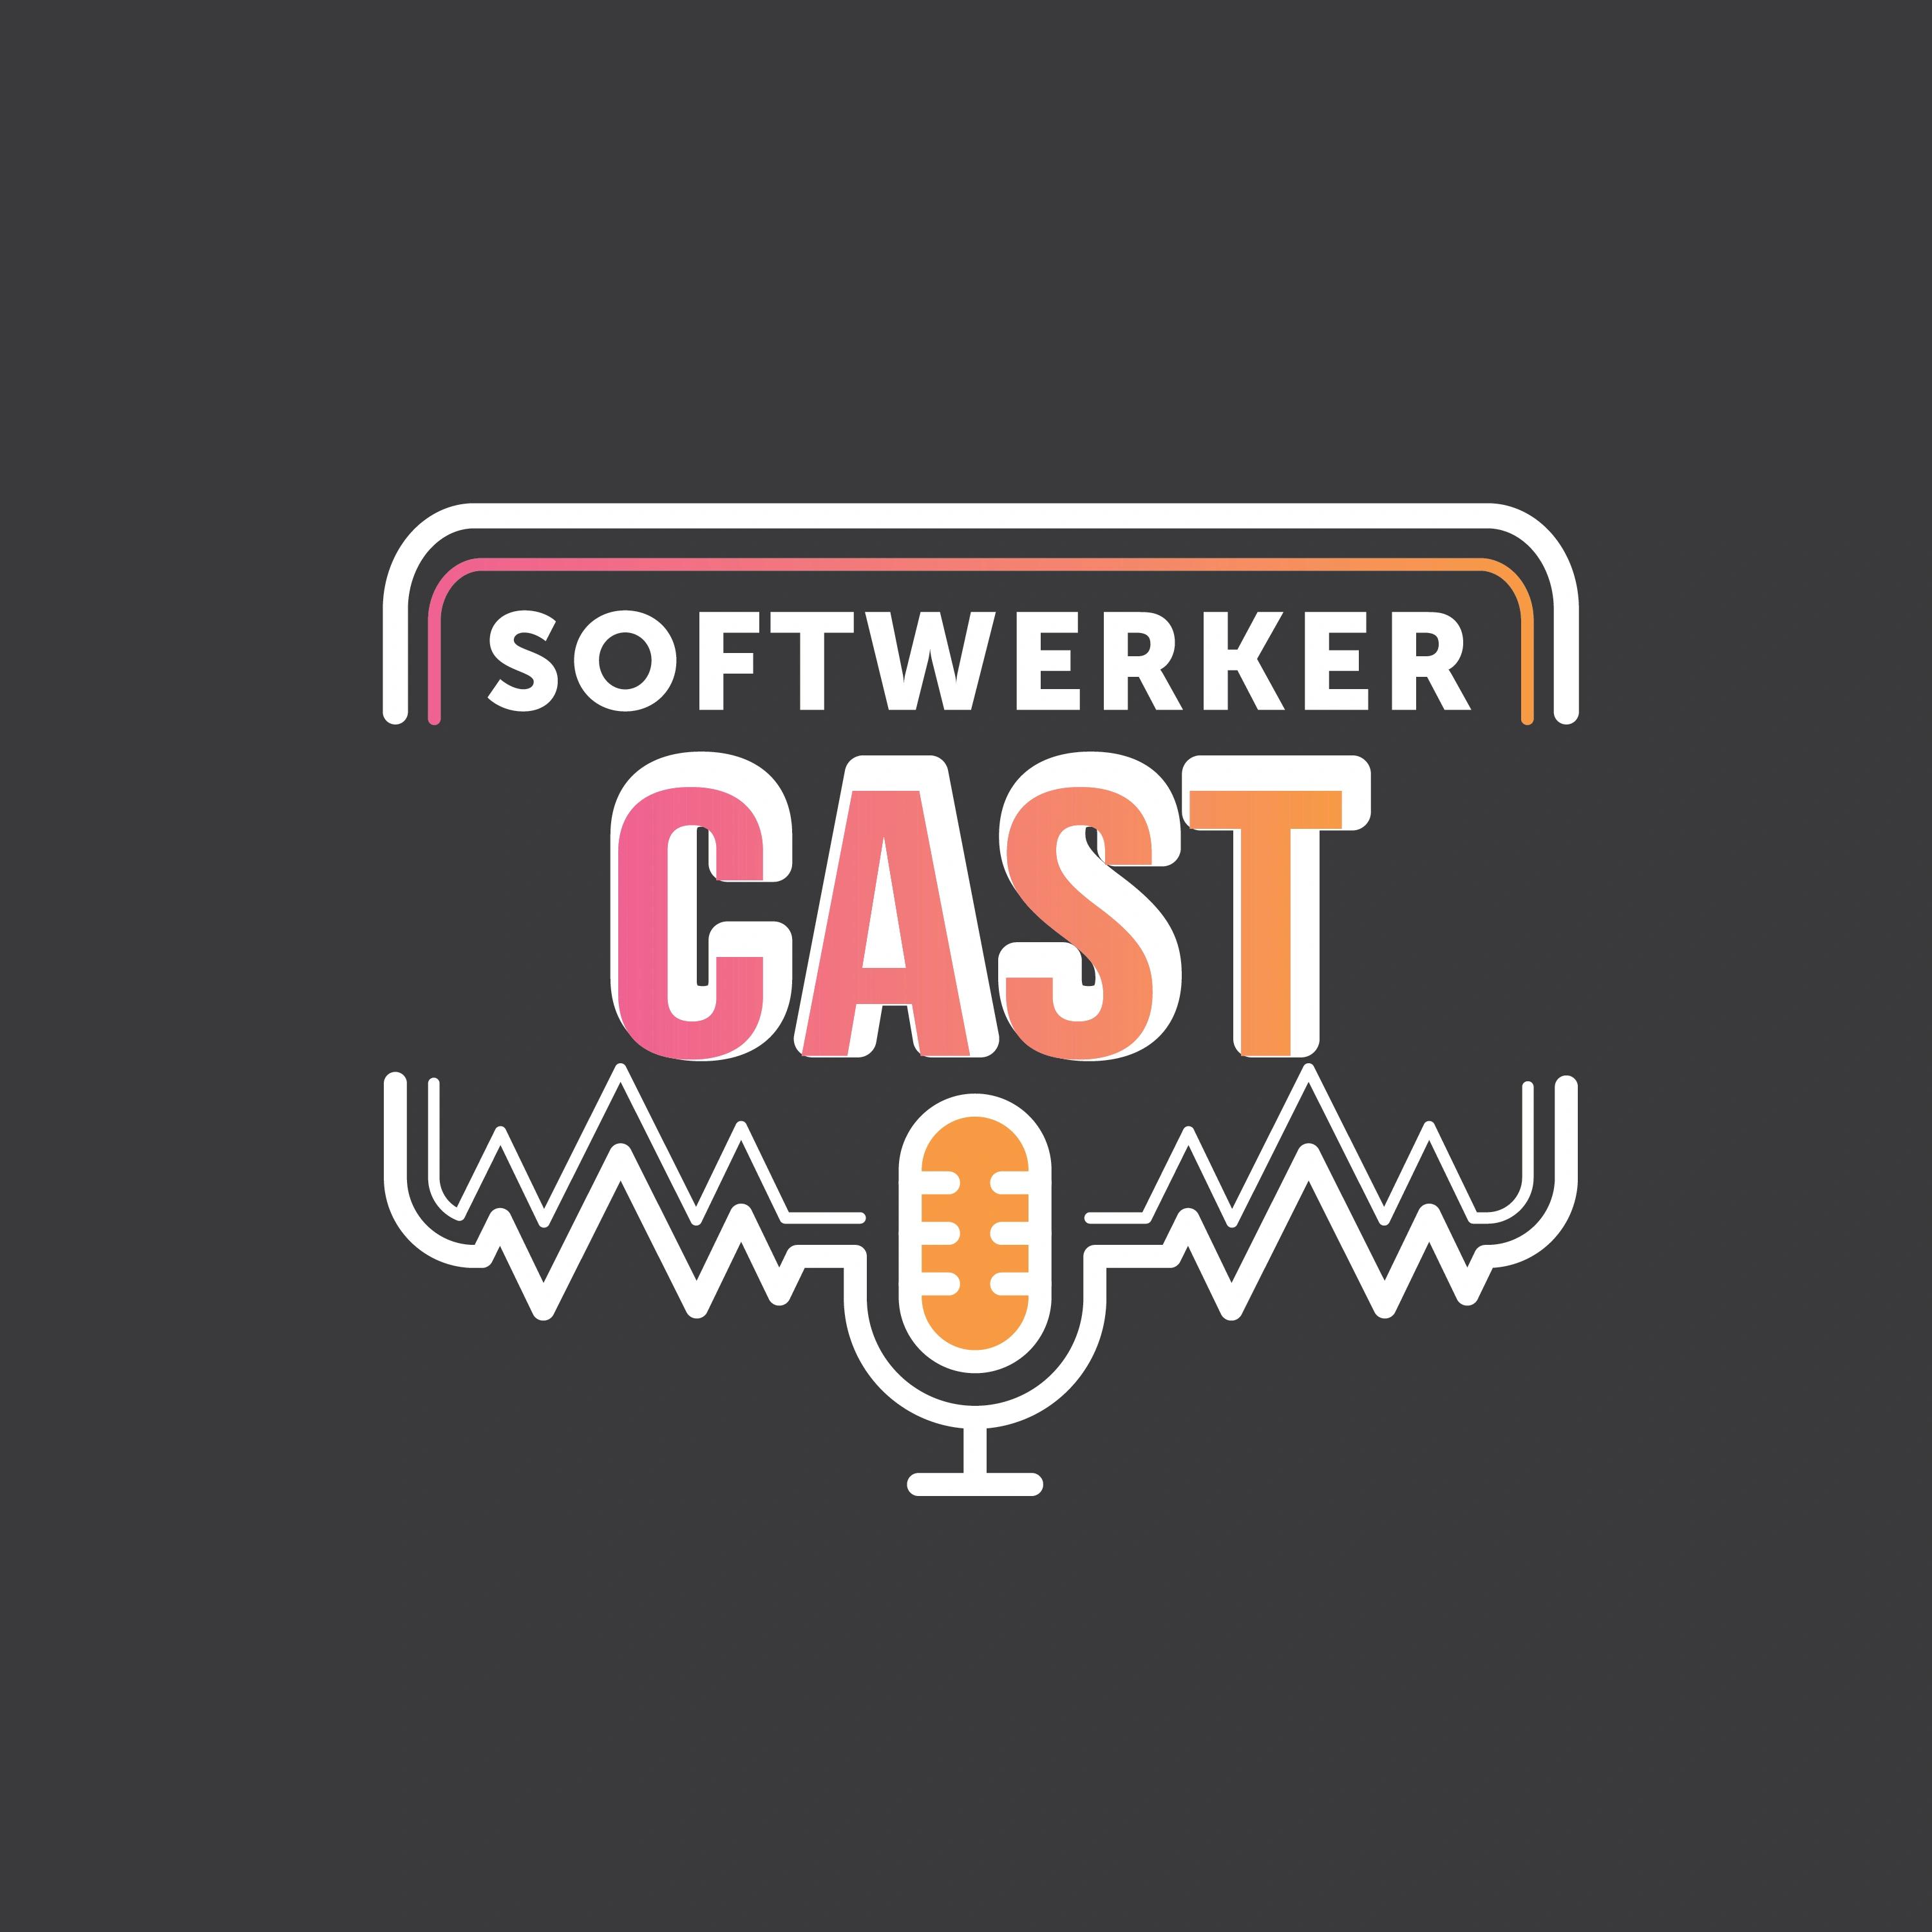 SoftwerkerCast - der IT-Podcast von Techies für Techies